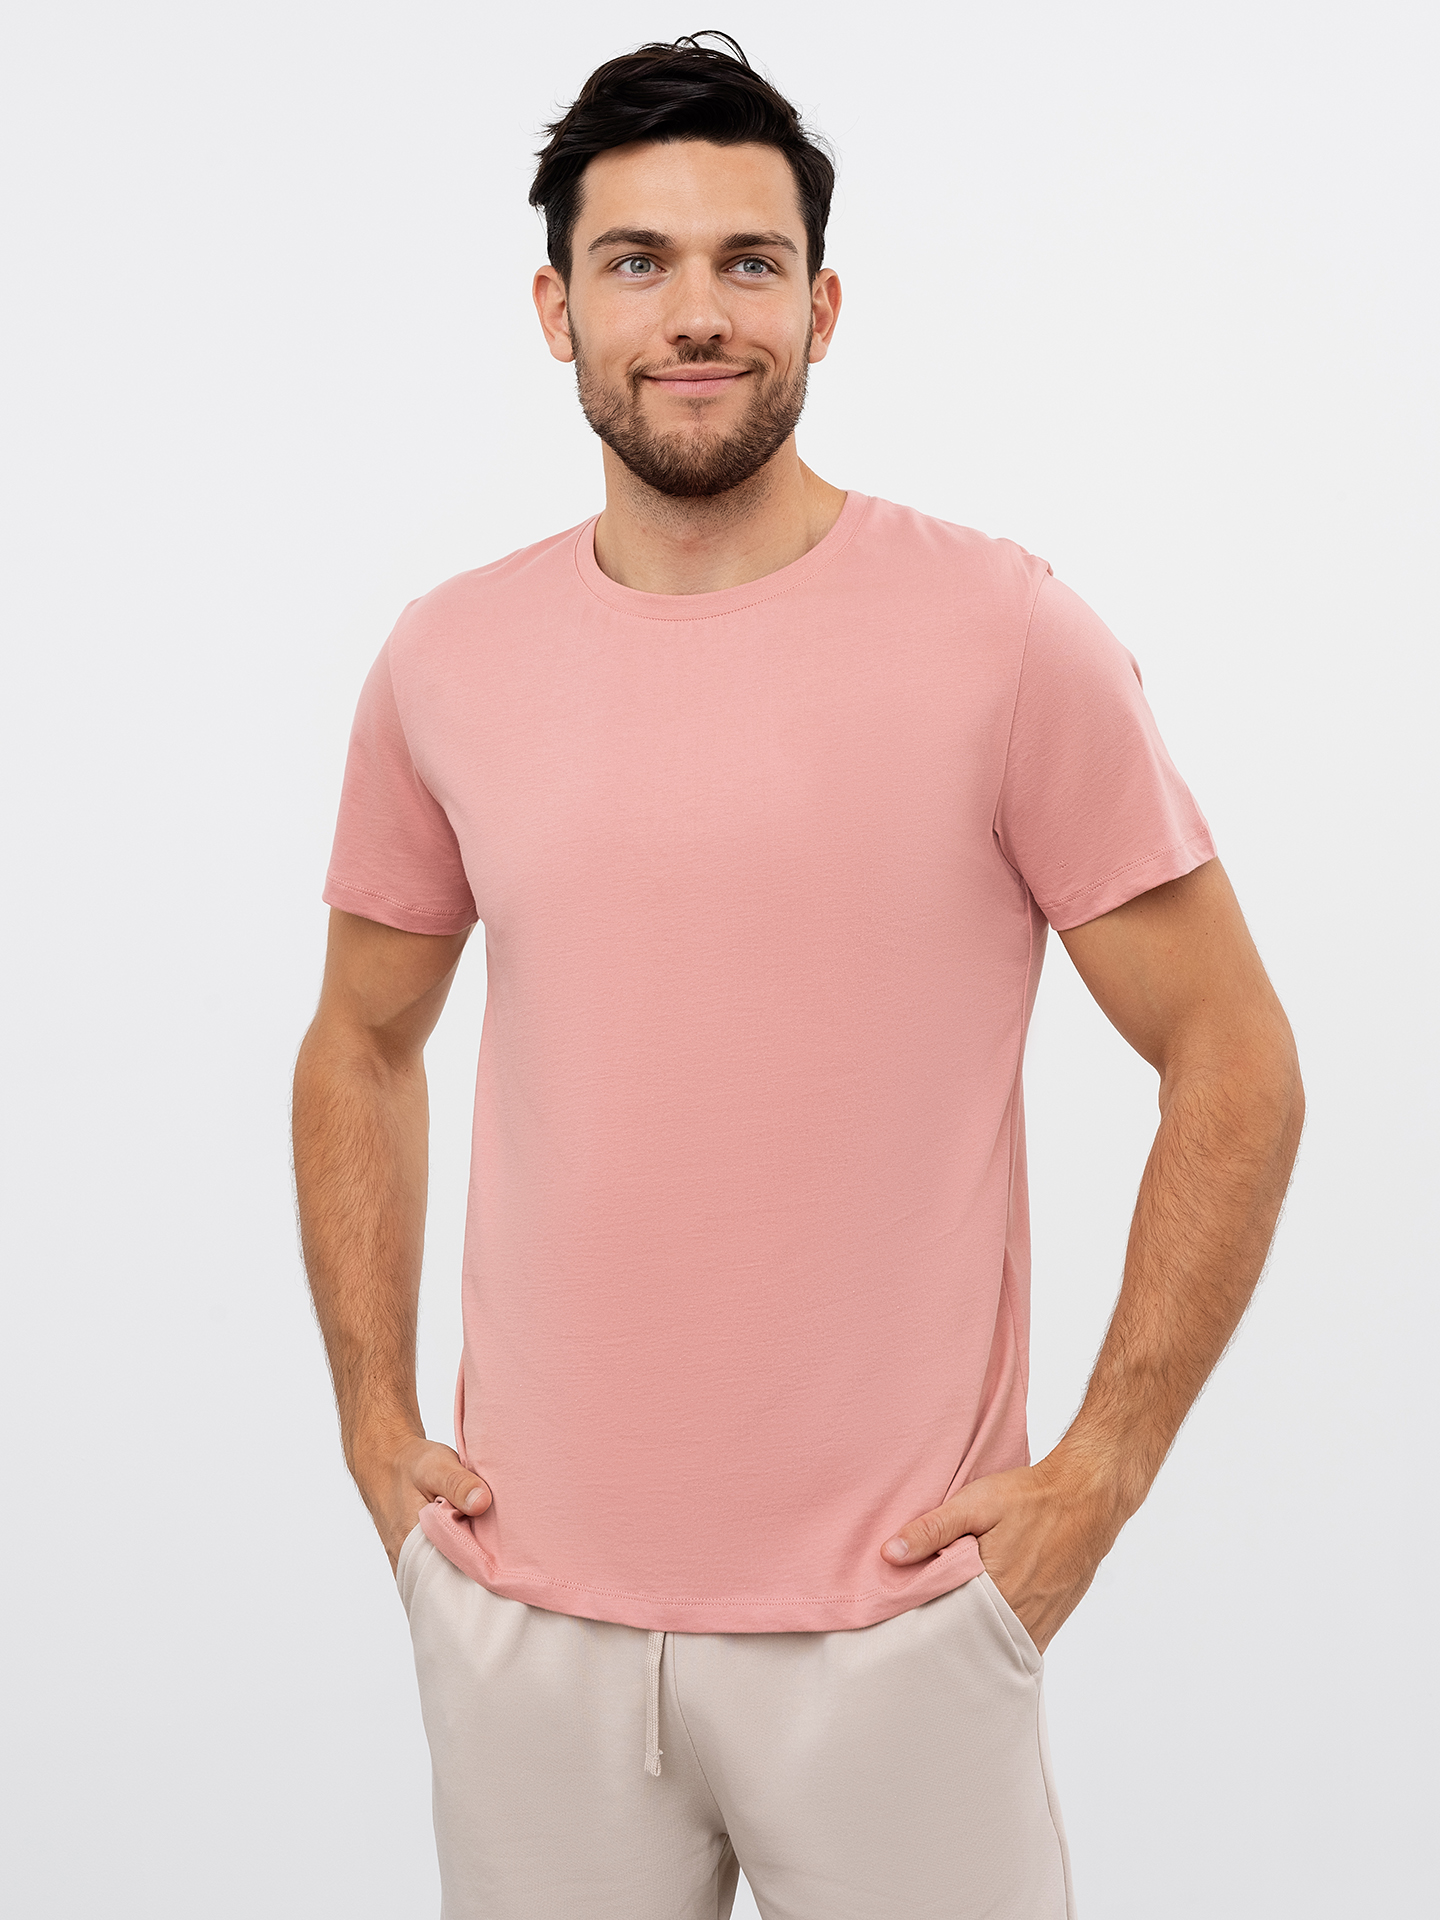 Однотонная мужская футболка в персиковом цвете